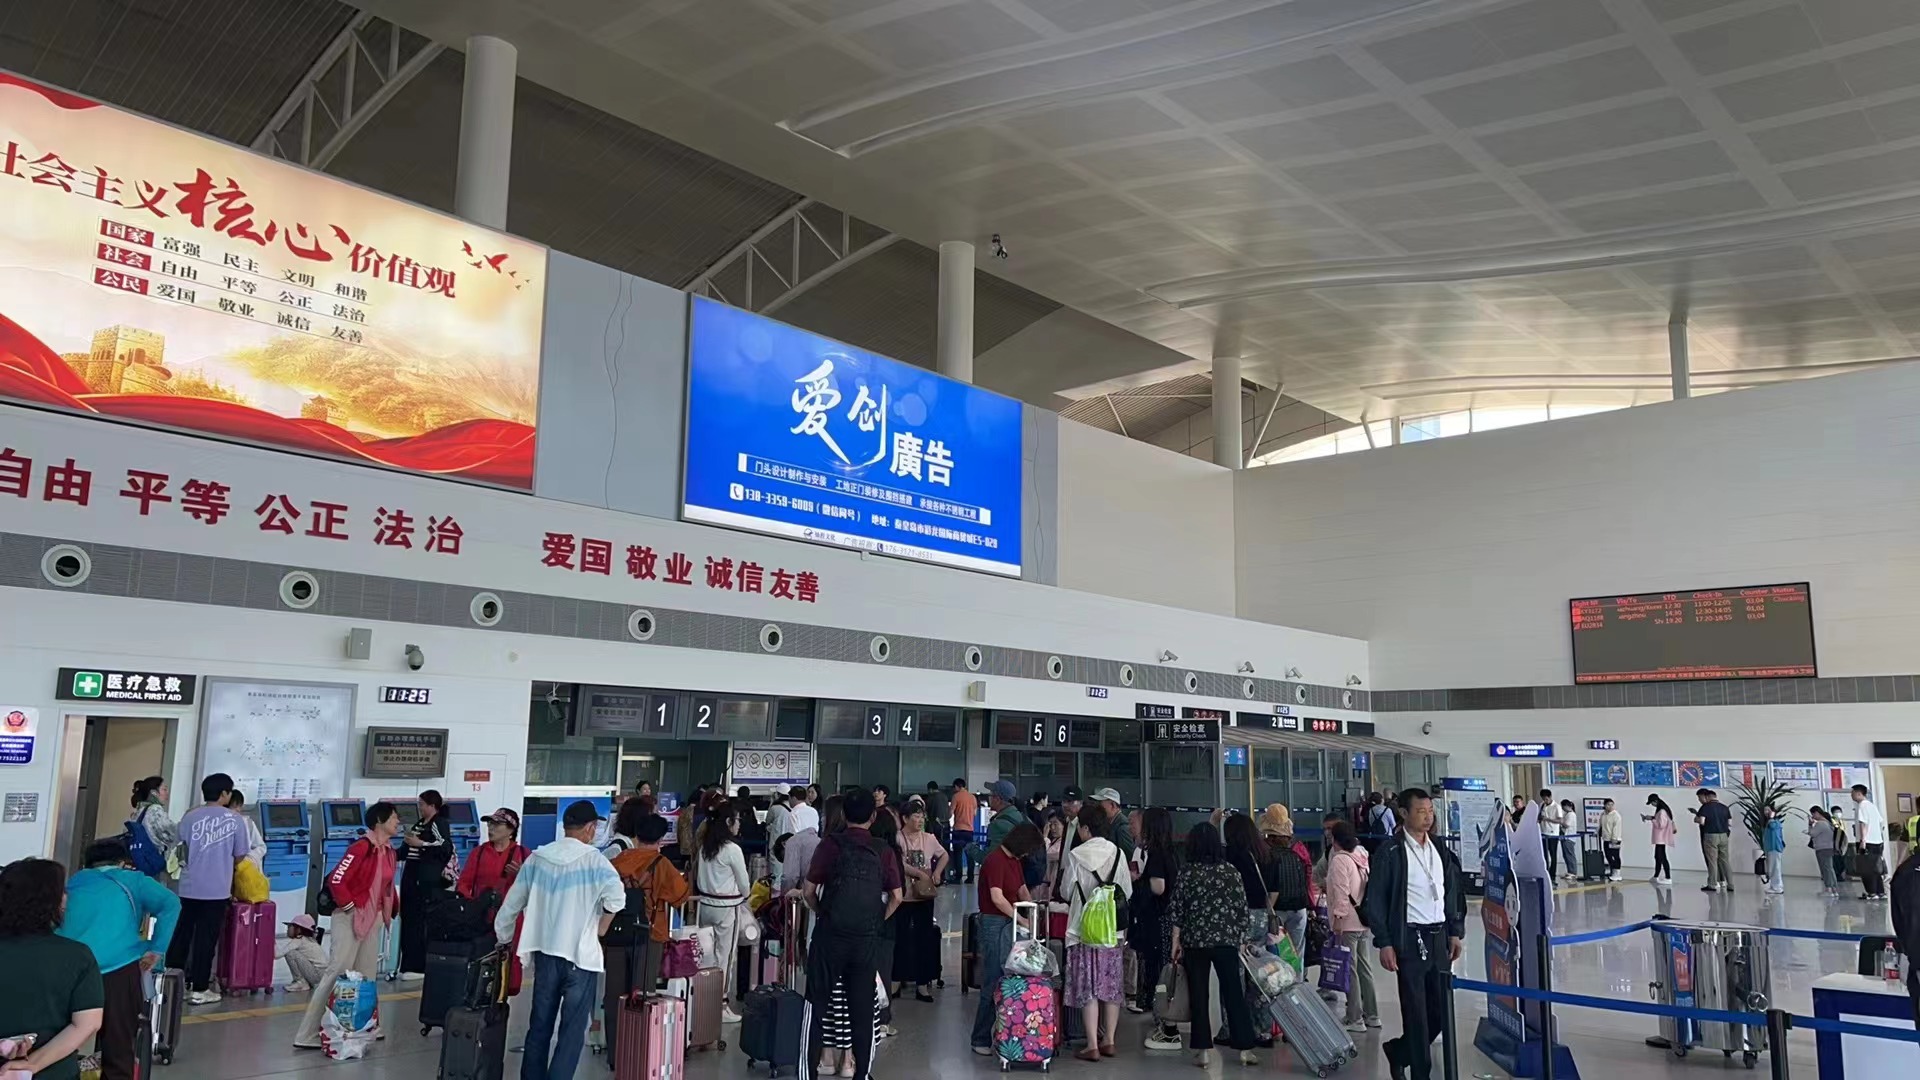 客座率近80% 货邮吞吐量同比增长202.80% 秦皇岛机场运输三大指标持续增长